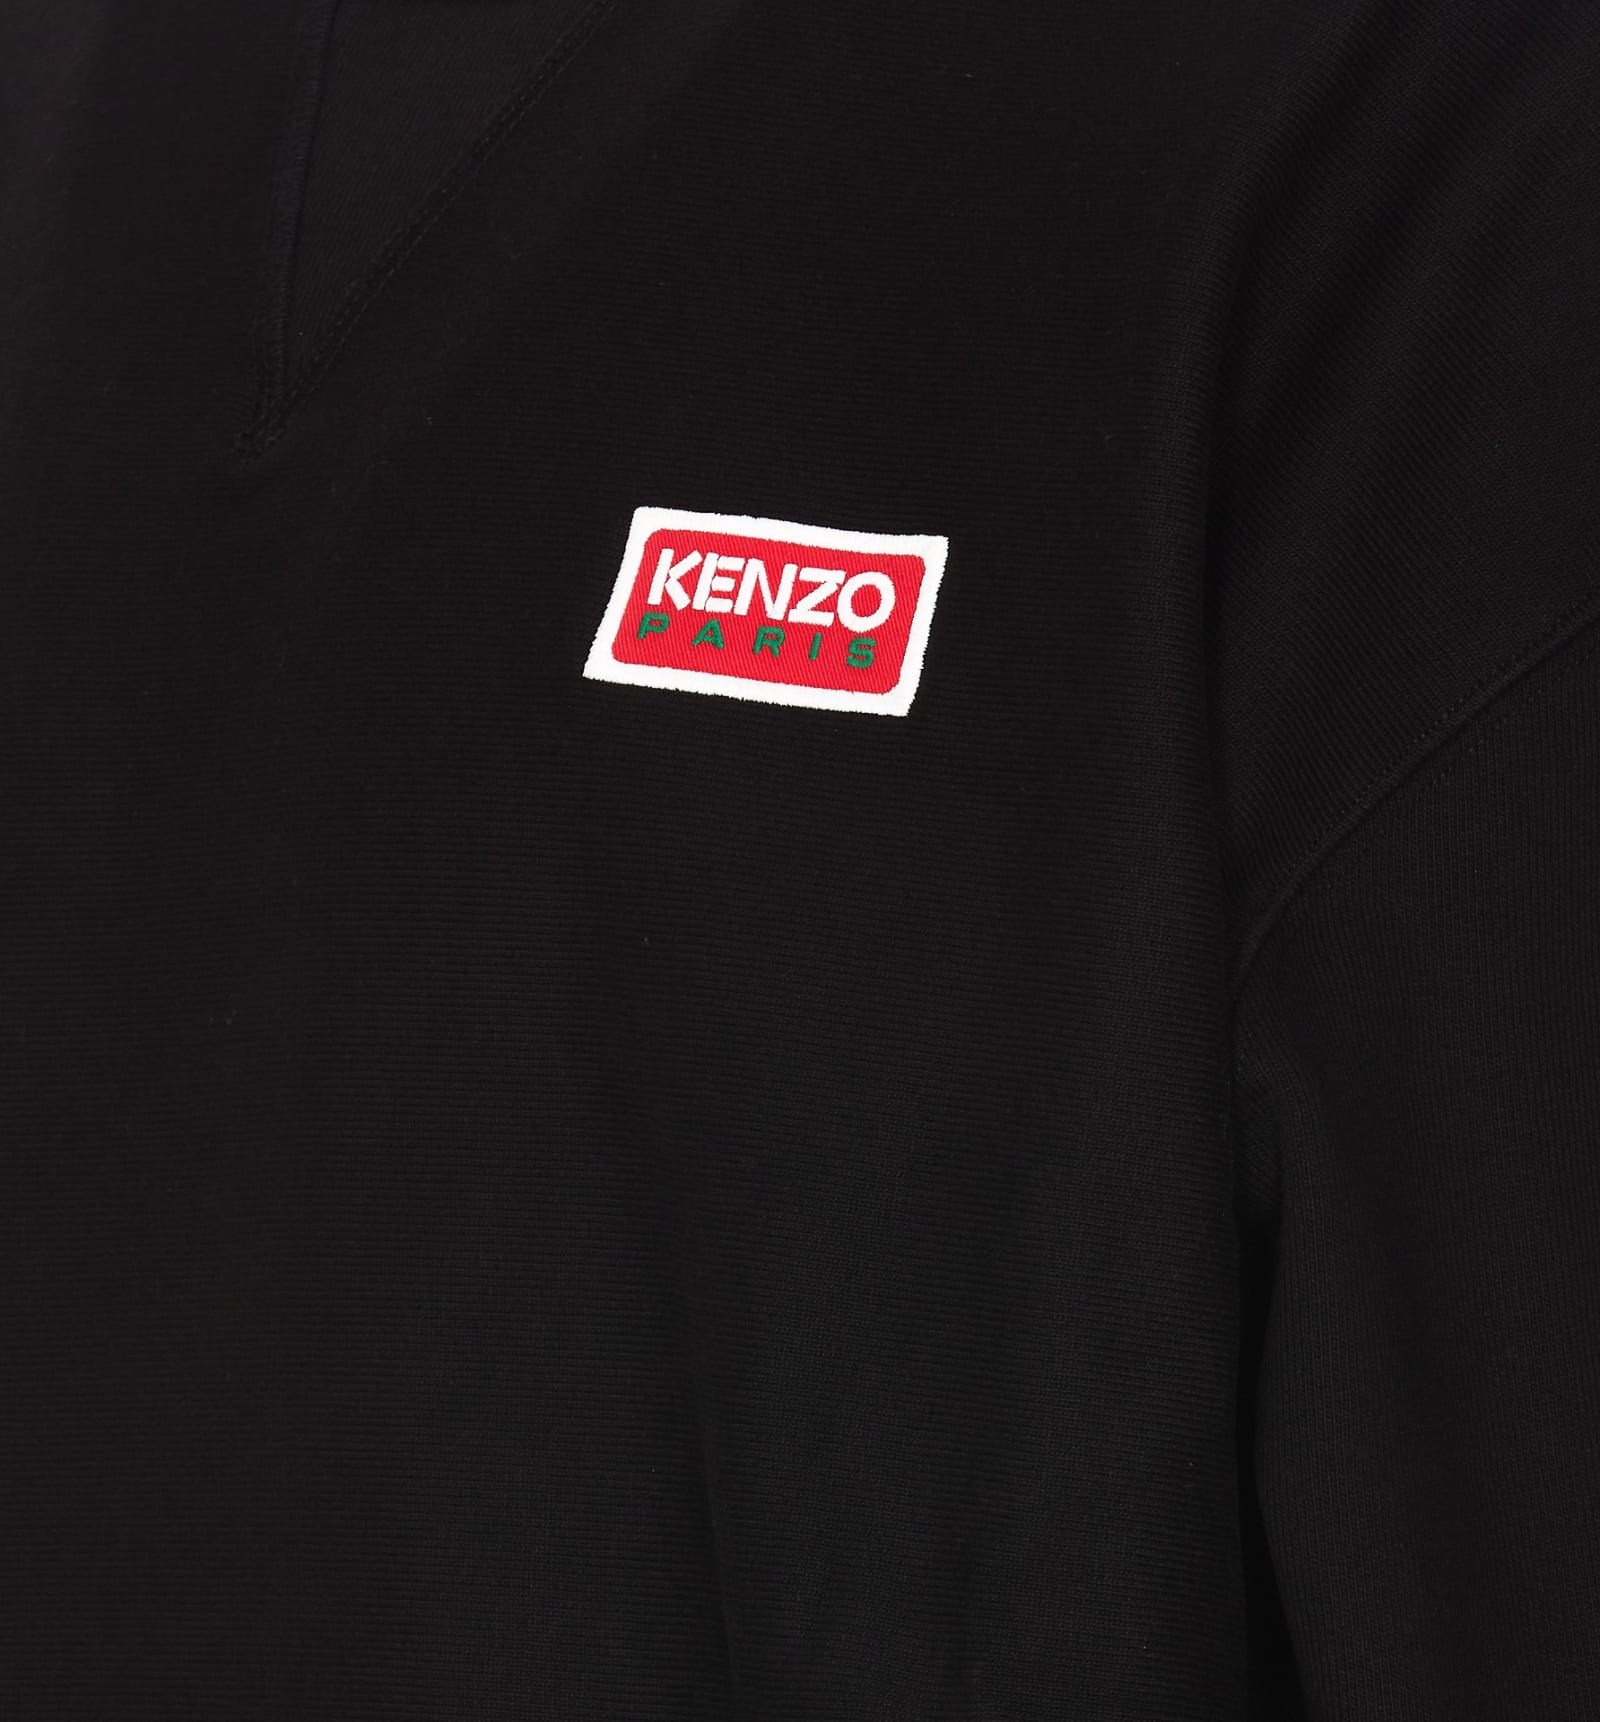 Shop Kenzo Paris Oversize Sweatshirt In Black